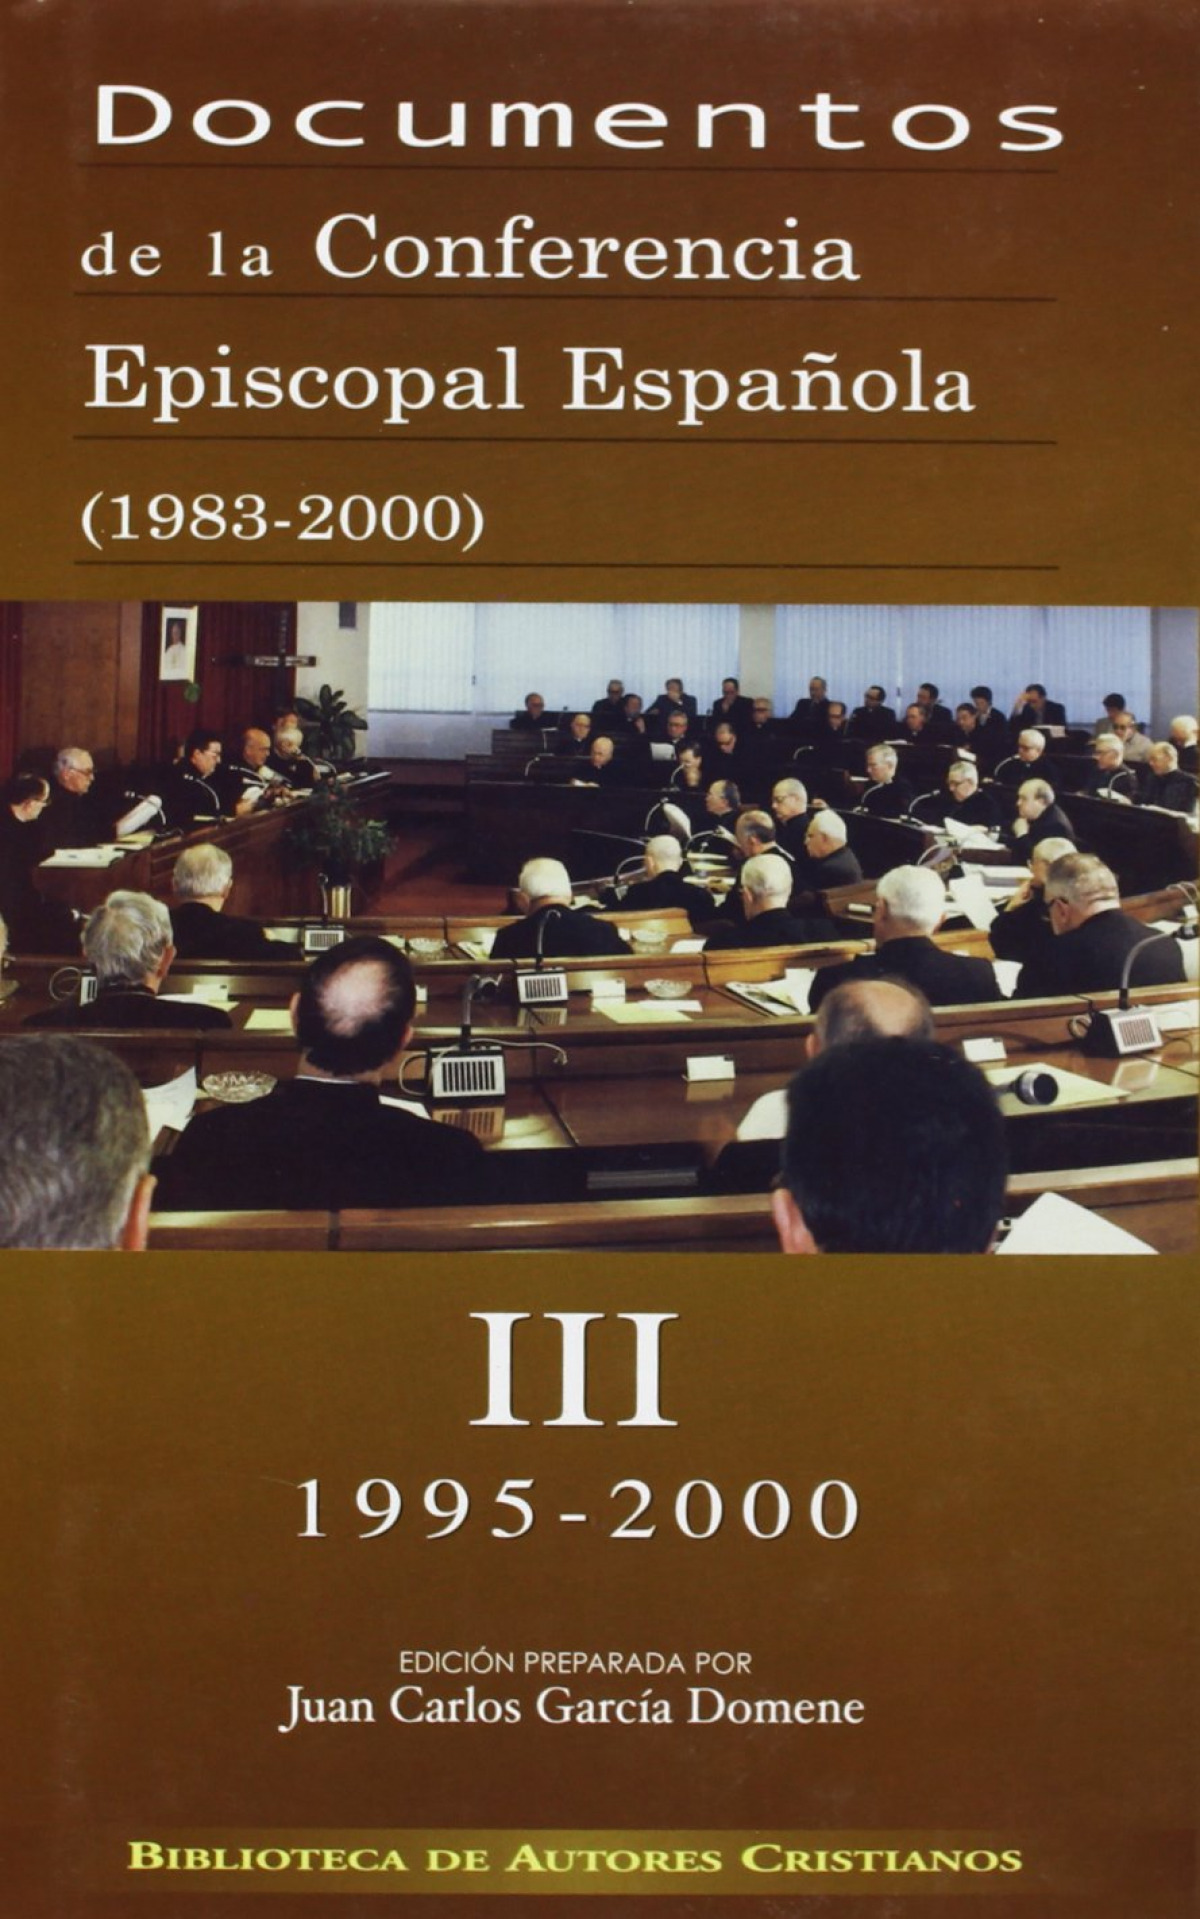 III) Docimentos Conferencia Episcopal Española 1983-2000 - Vv.Aa